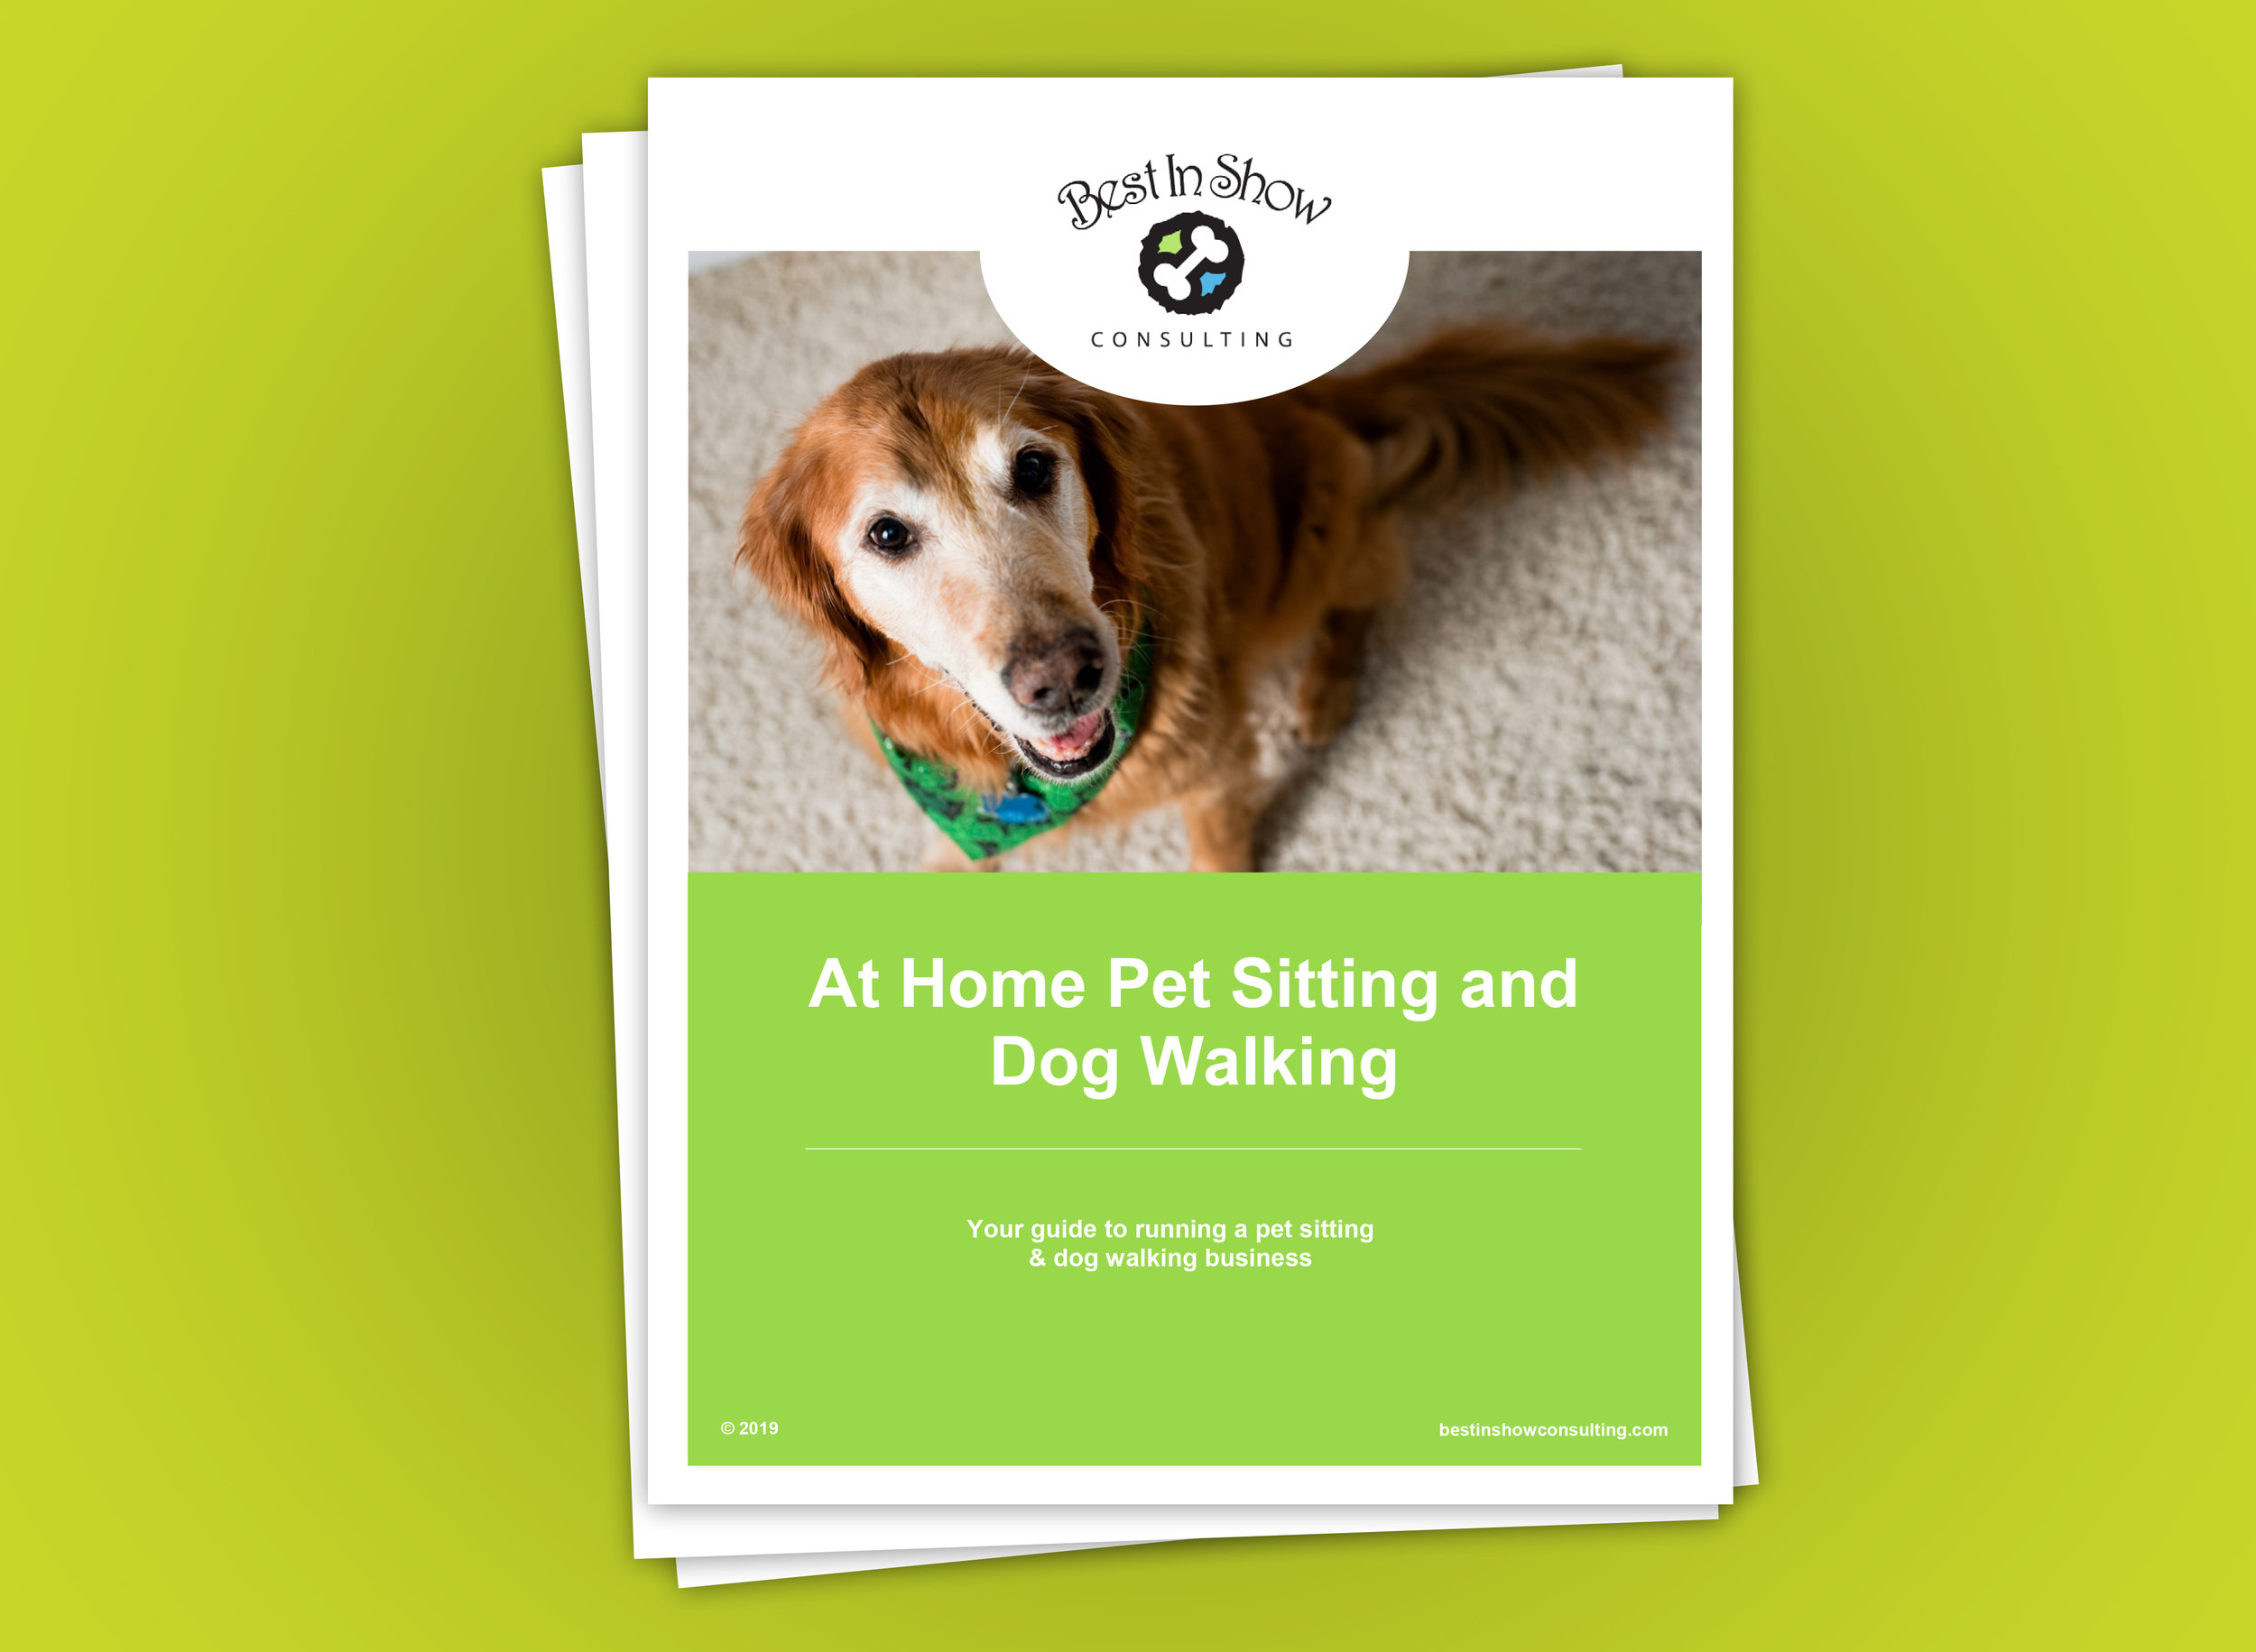 Denver Pro Pet Sitting  Denver's Premier Pet Sitting, Dog Walking & House  Sitting Service-Fast Dog Facts For Fun